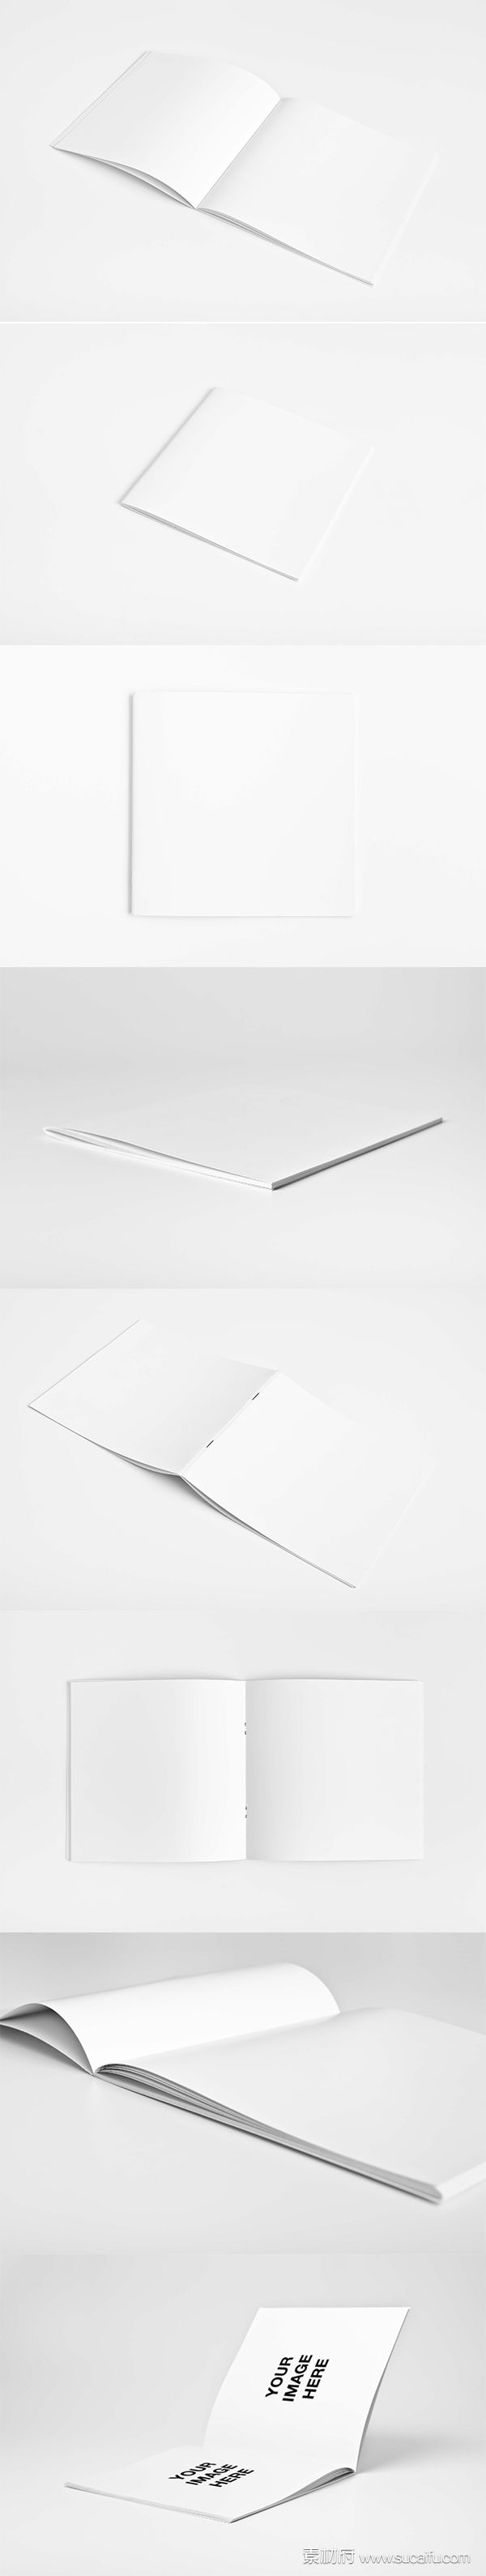 一套空白方形画册展示模板PSD分层文件